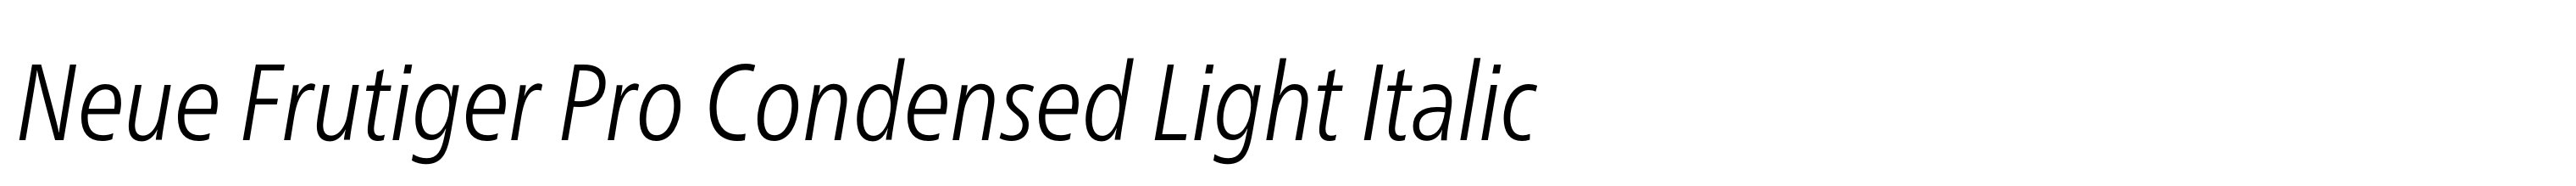 Neue Frutiger Pro Condensed Light Italic